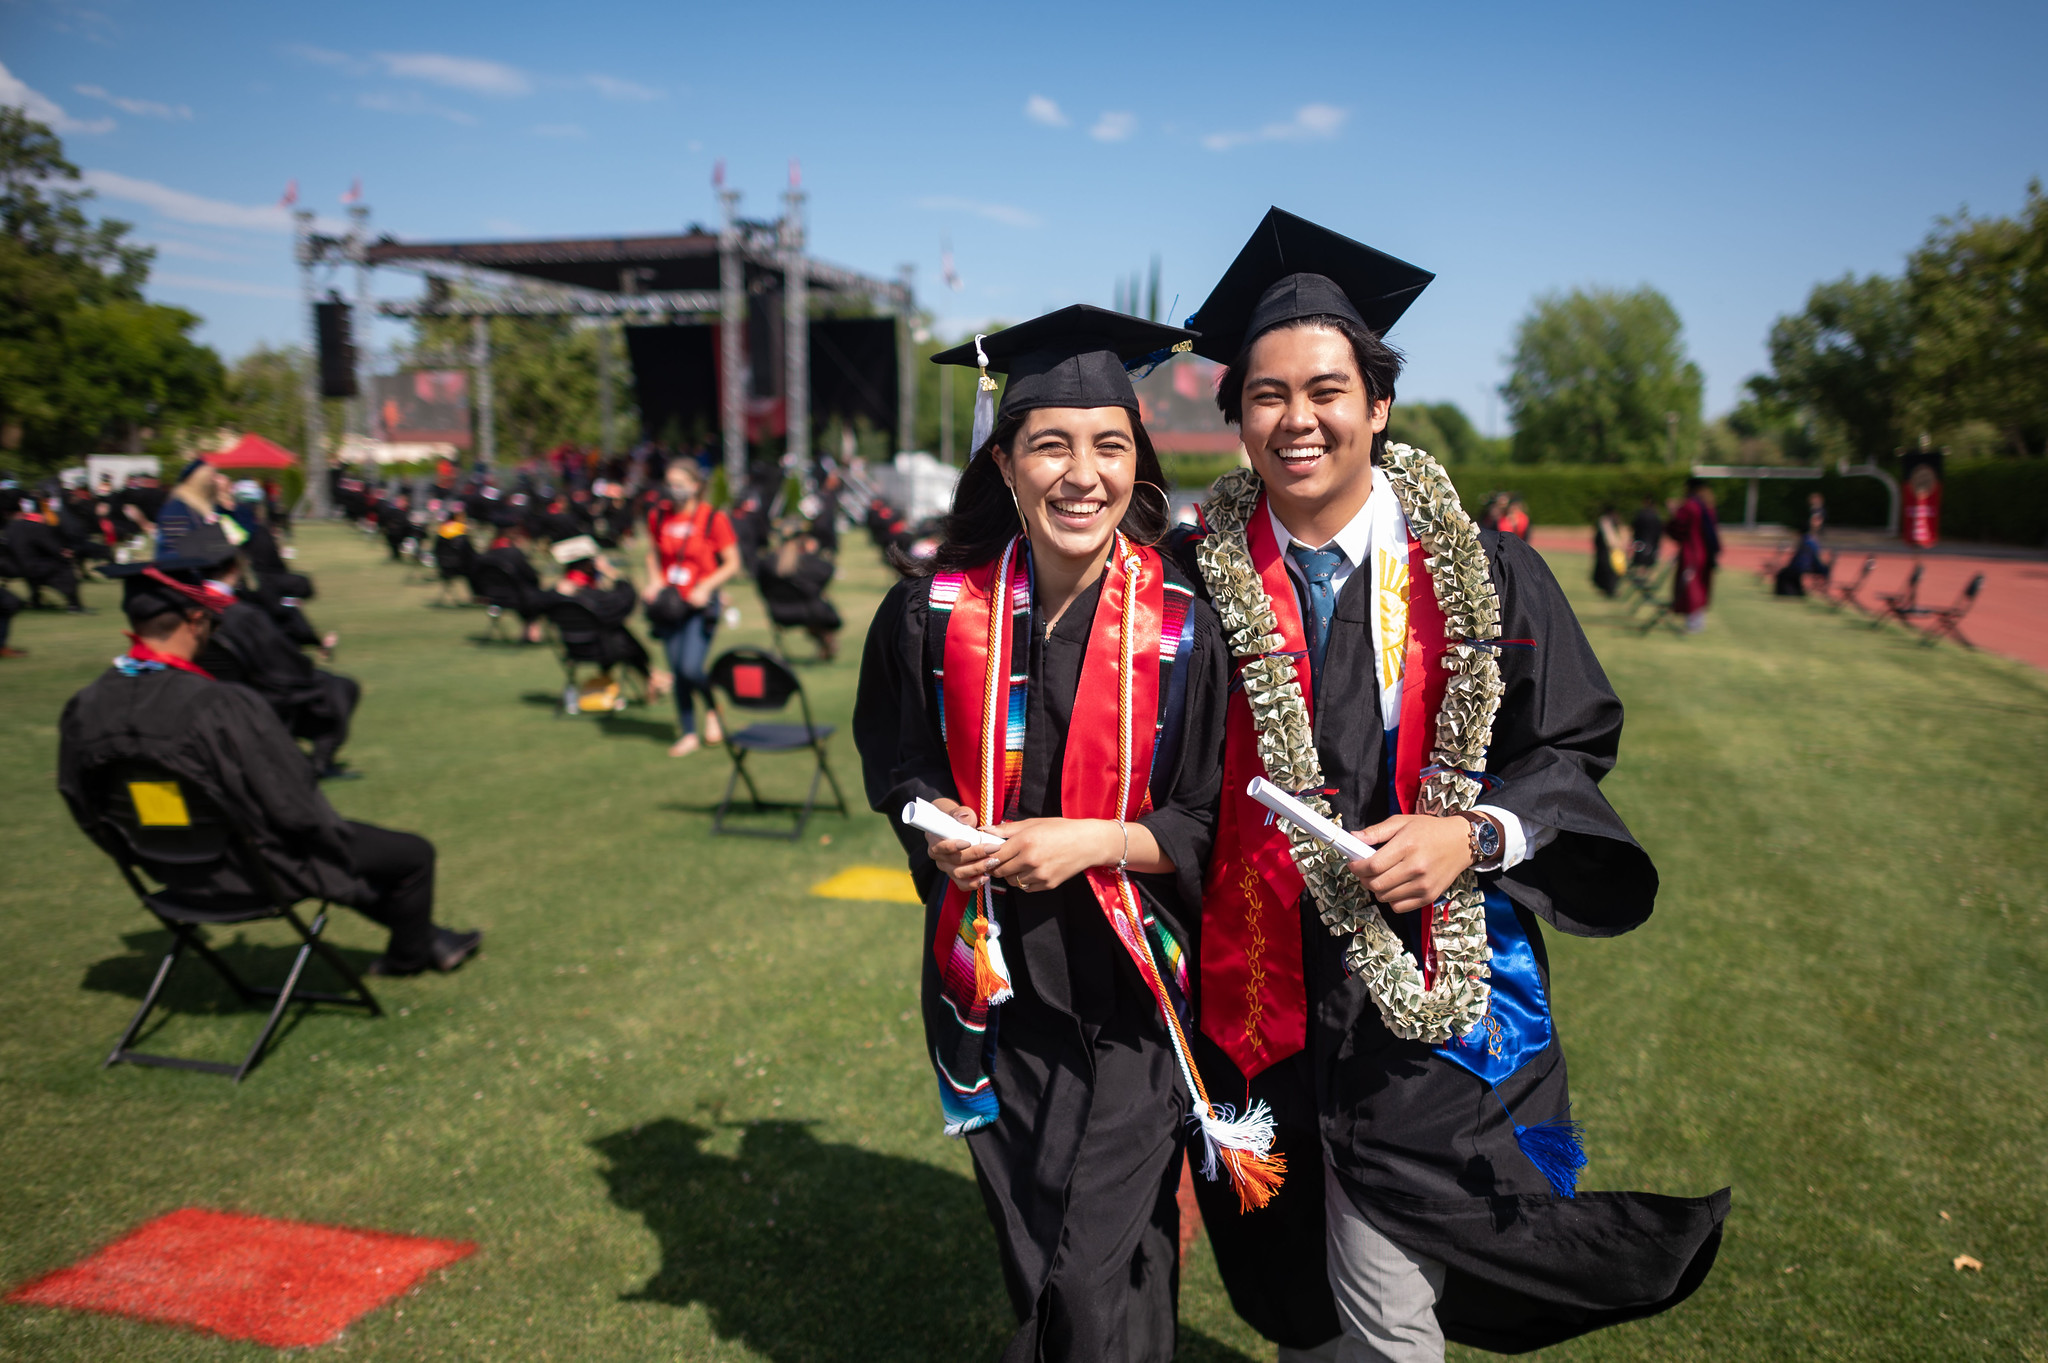 Two graduates walking across a grassy field.